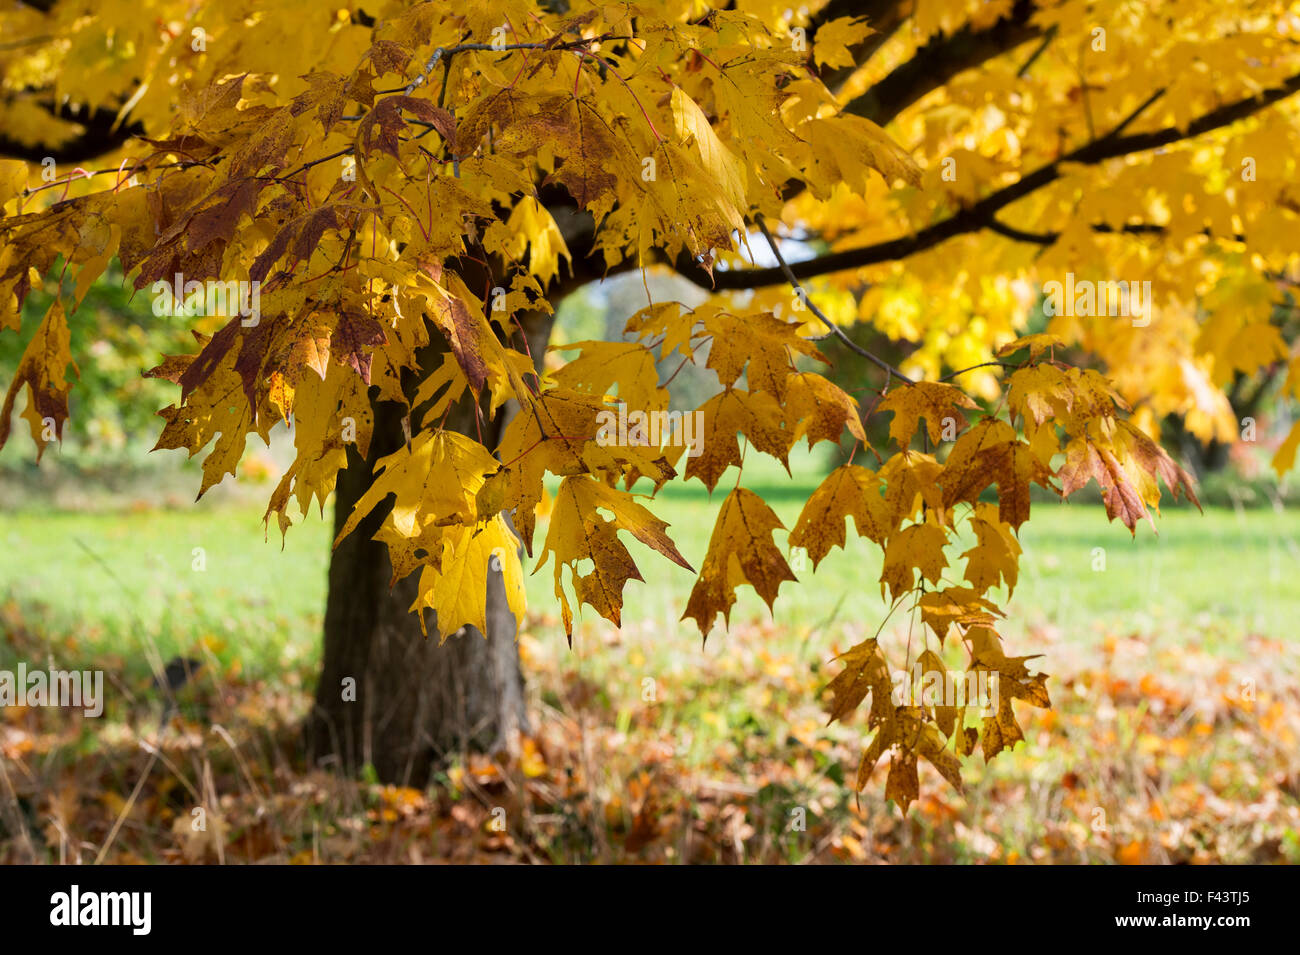 Acer Saccharum Nigrum. Black Maple tree leaves in autumn Stock Photo